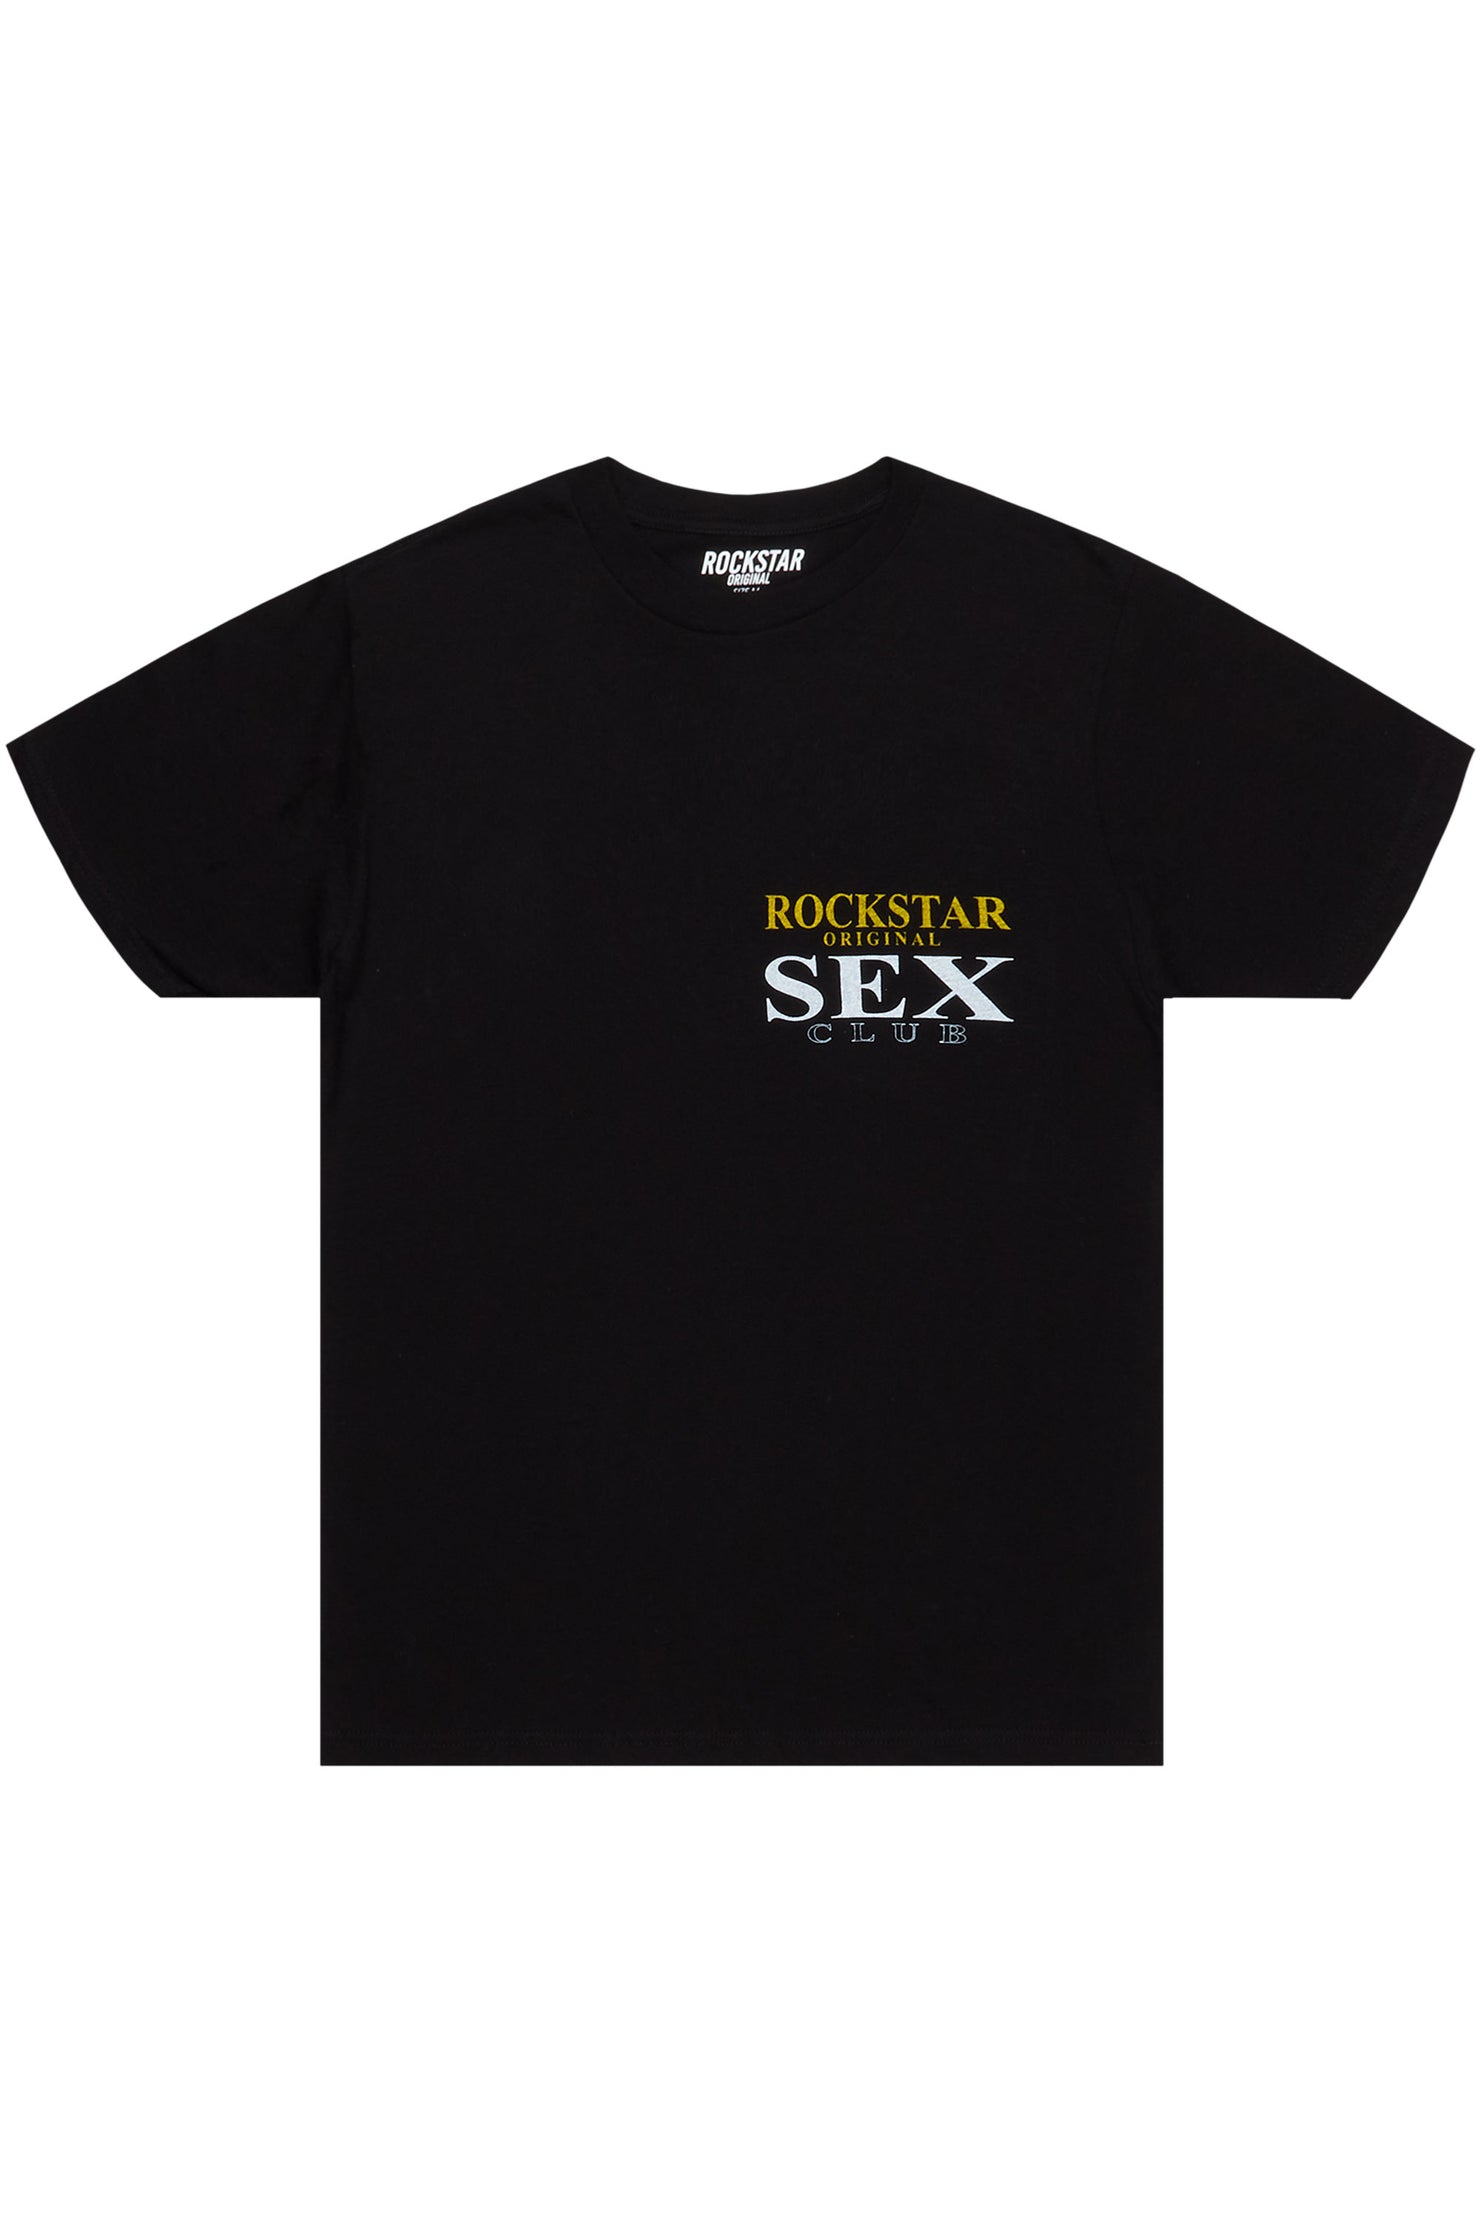 Yellakat Black Graphic T-Shirt